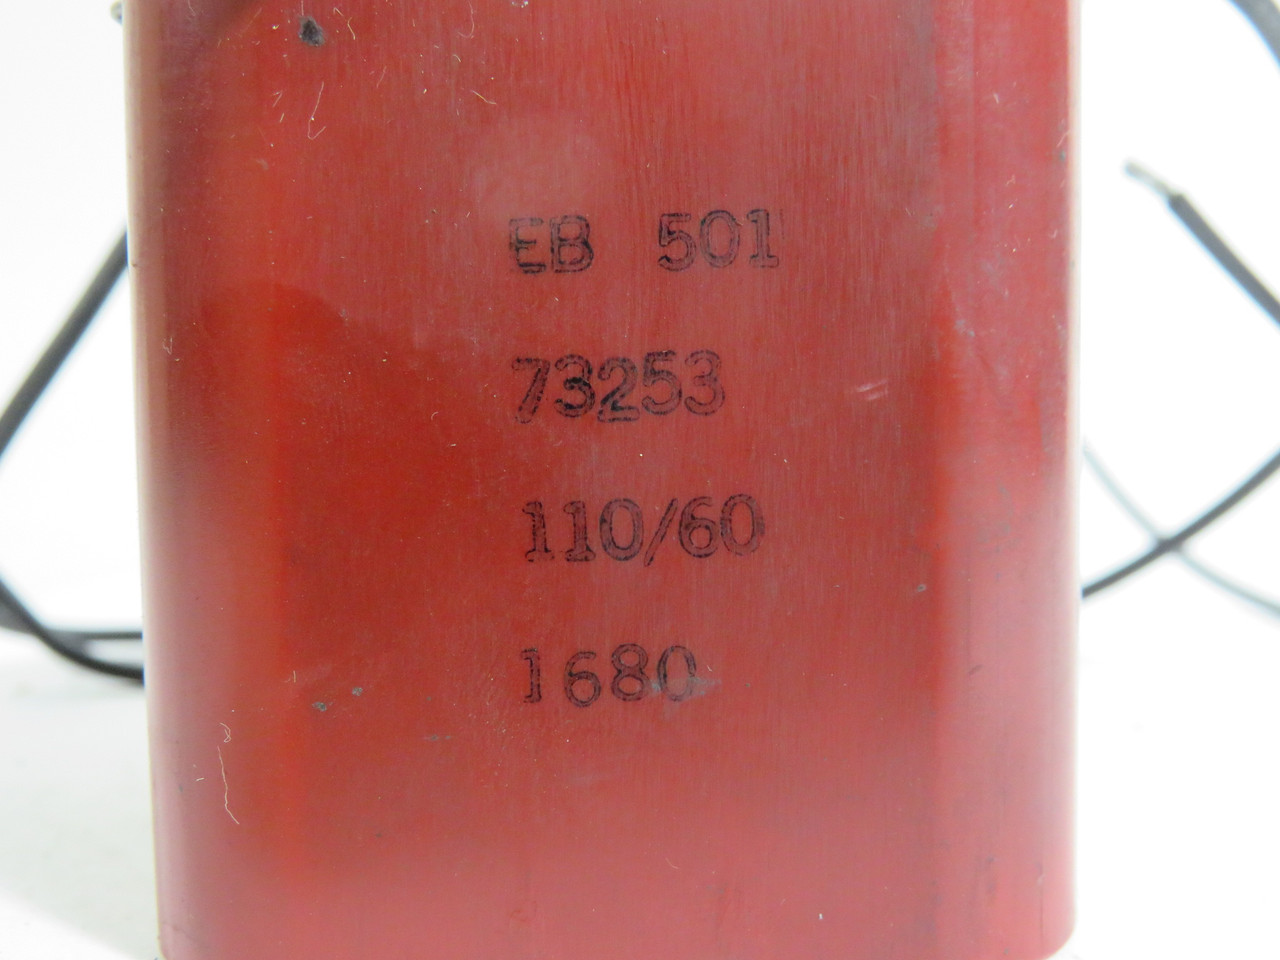 Namco EB501-73253 Solenoid Coil 110V 60Hz USED